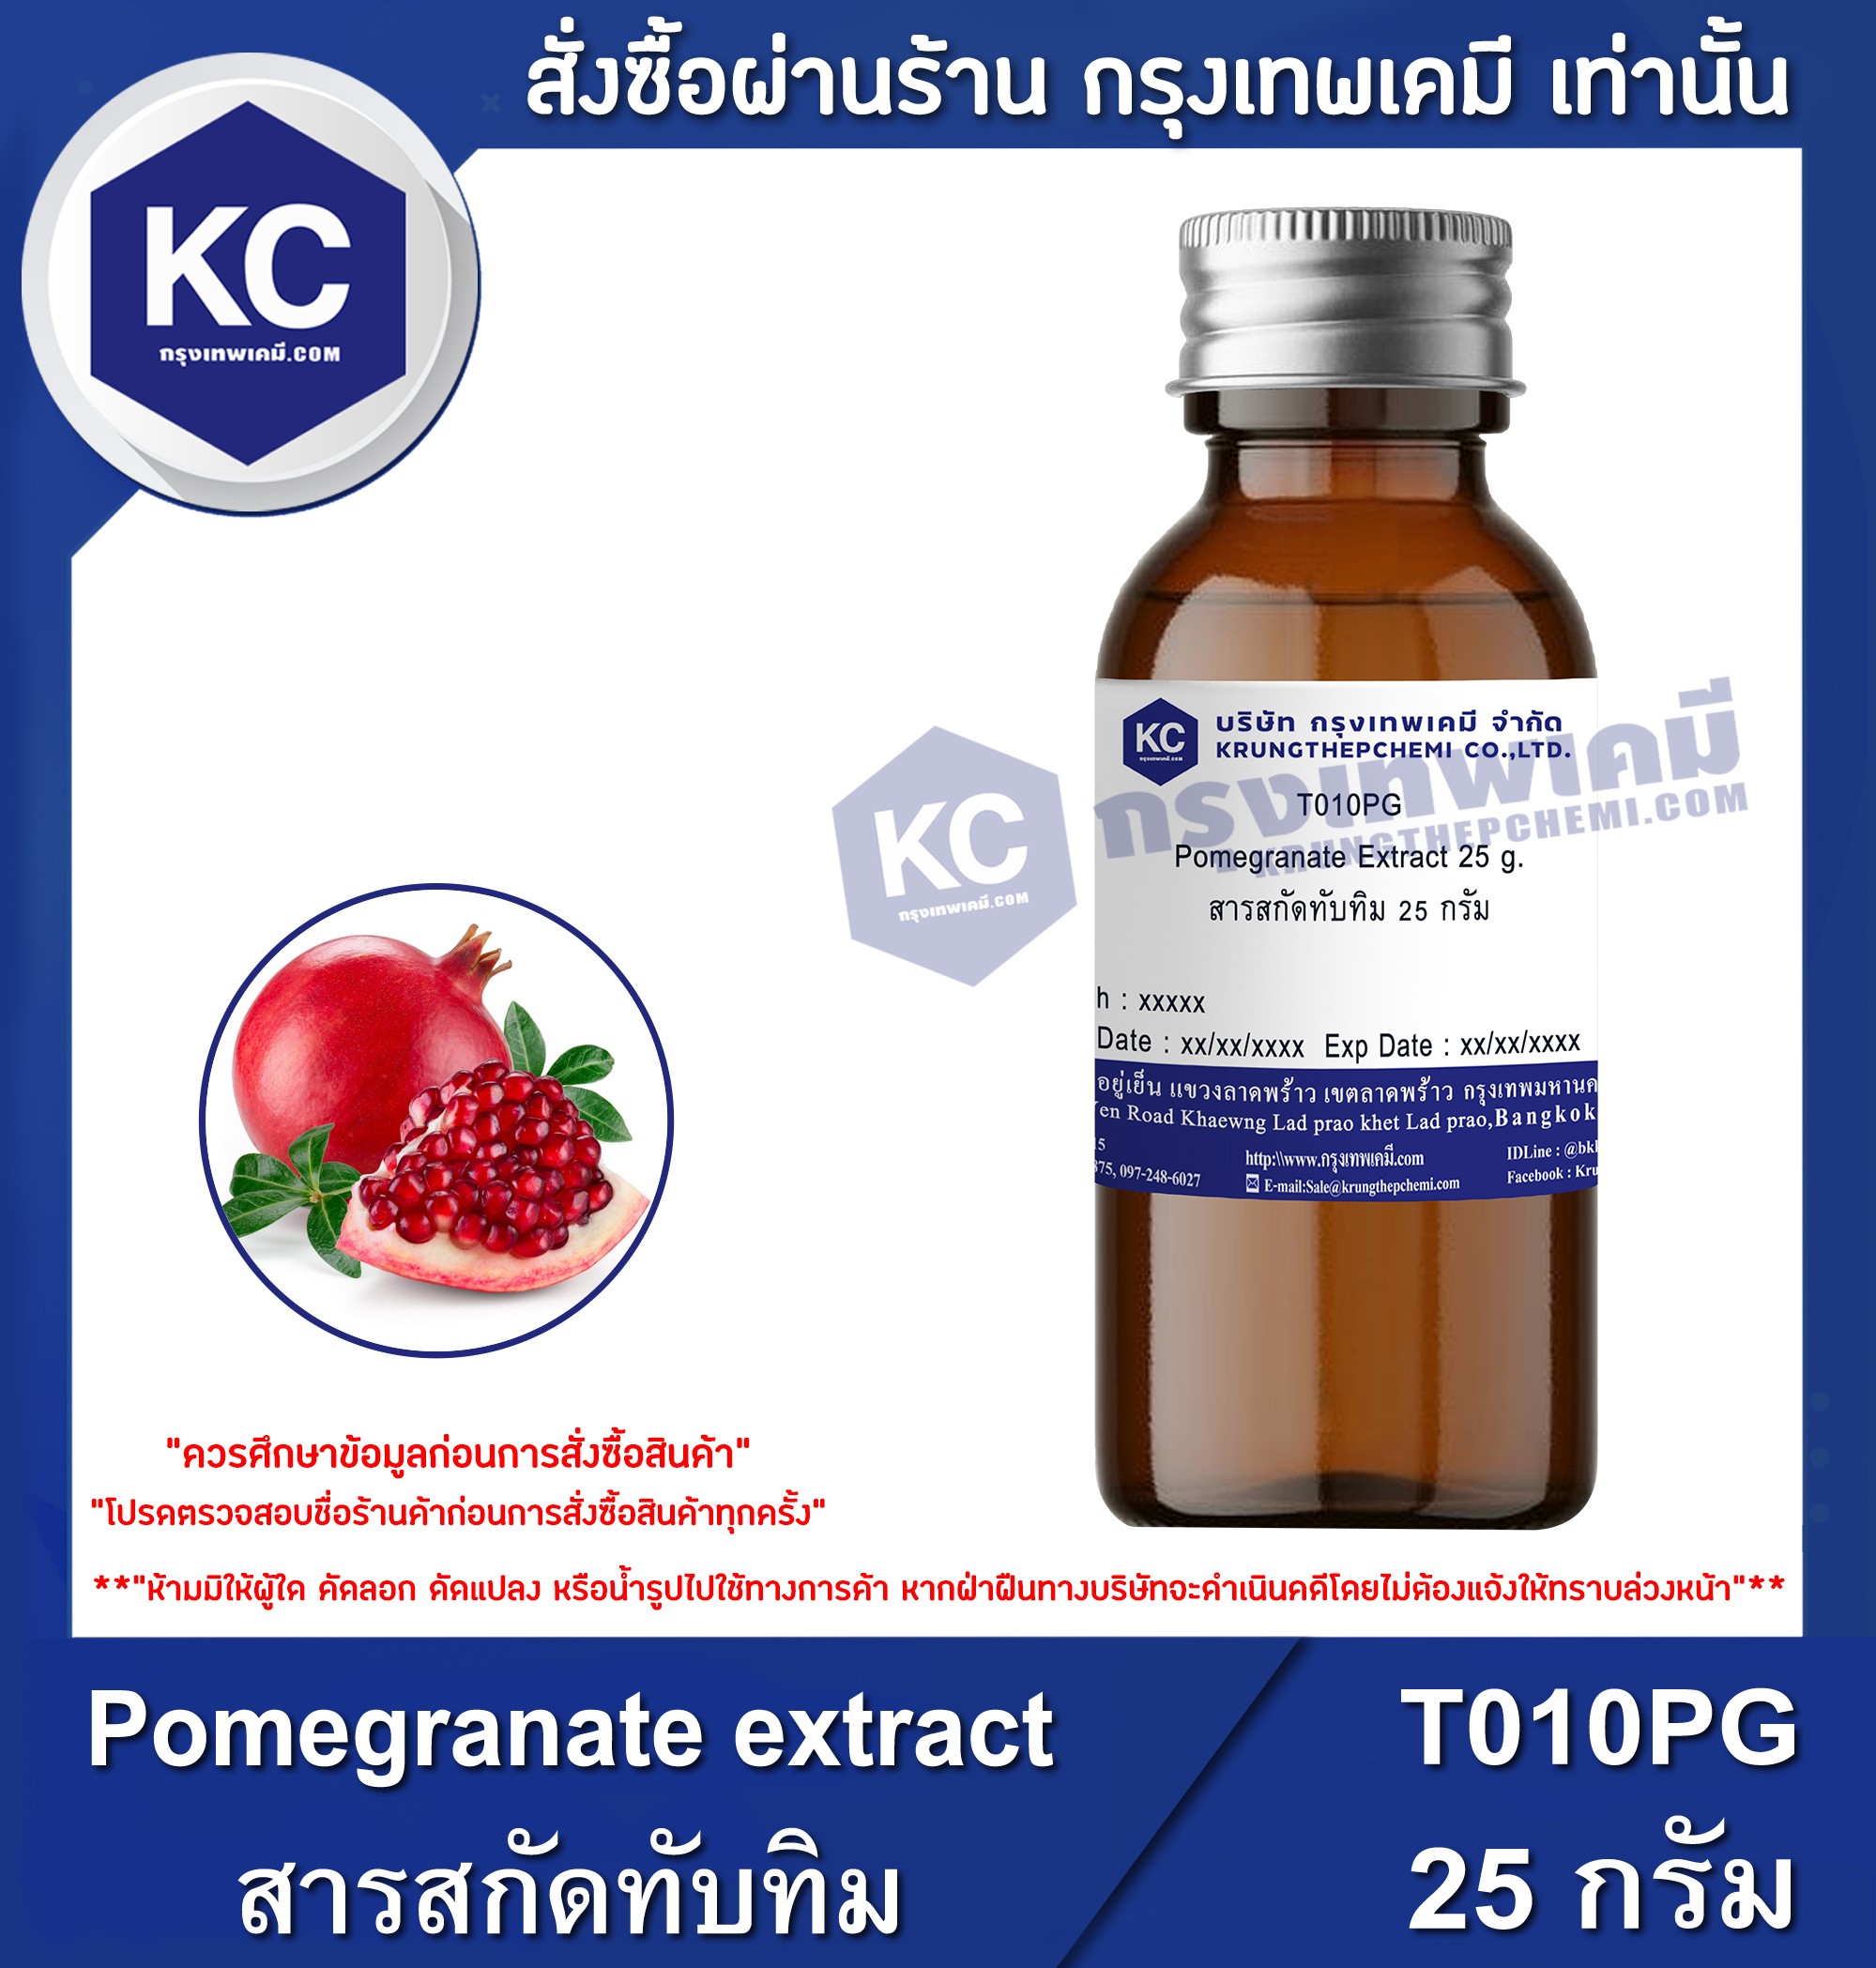 ราคา Pomegranate extract / สารสกัดทับทิม (T010PG)